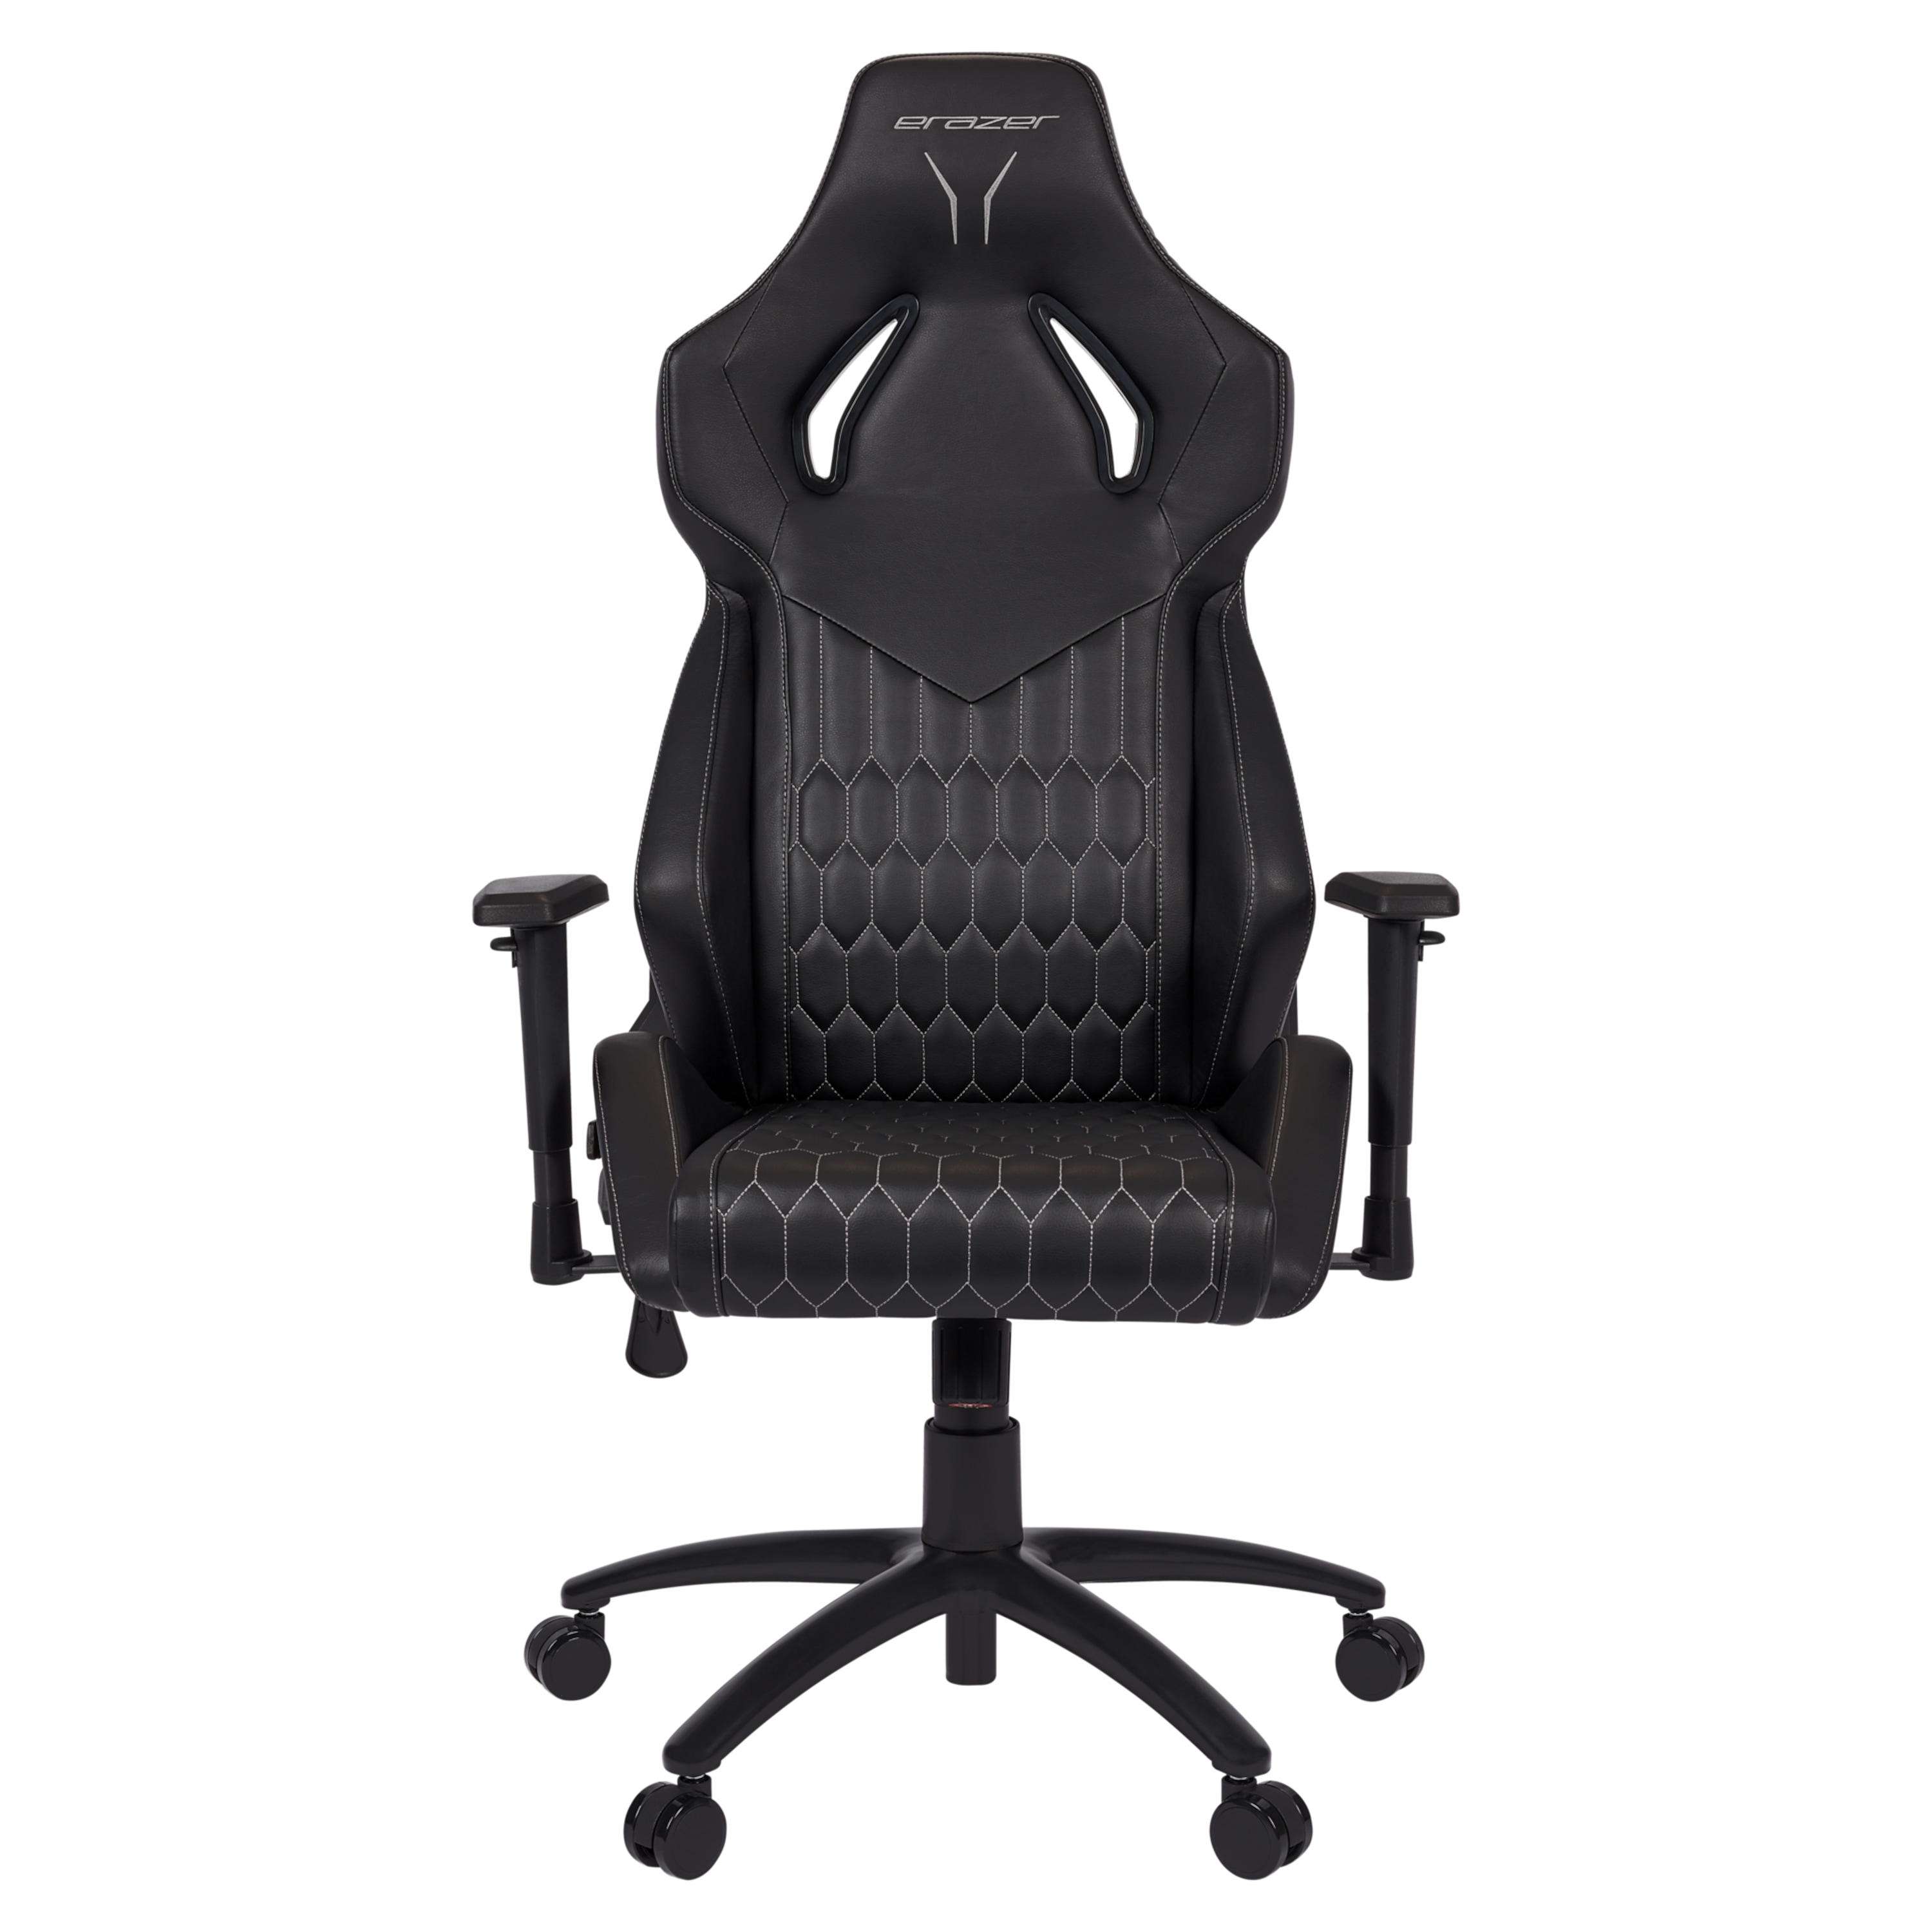 ERAZER® Druid P10 Gaming stoel | hoog zitcomfort | sportieve look | hoogwaardige materialen & ergonomisch ondersteunde zitpositie